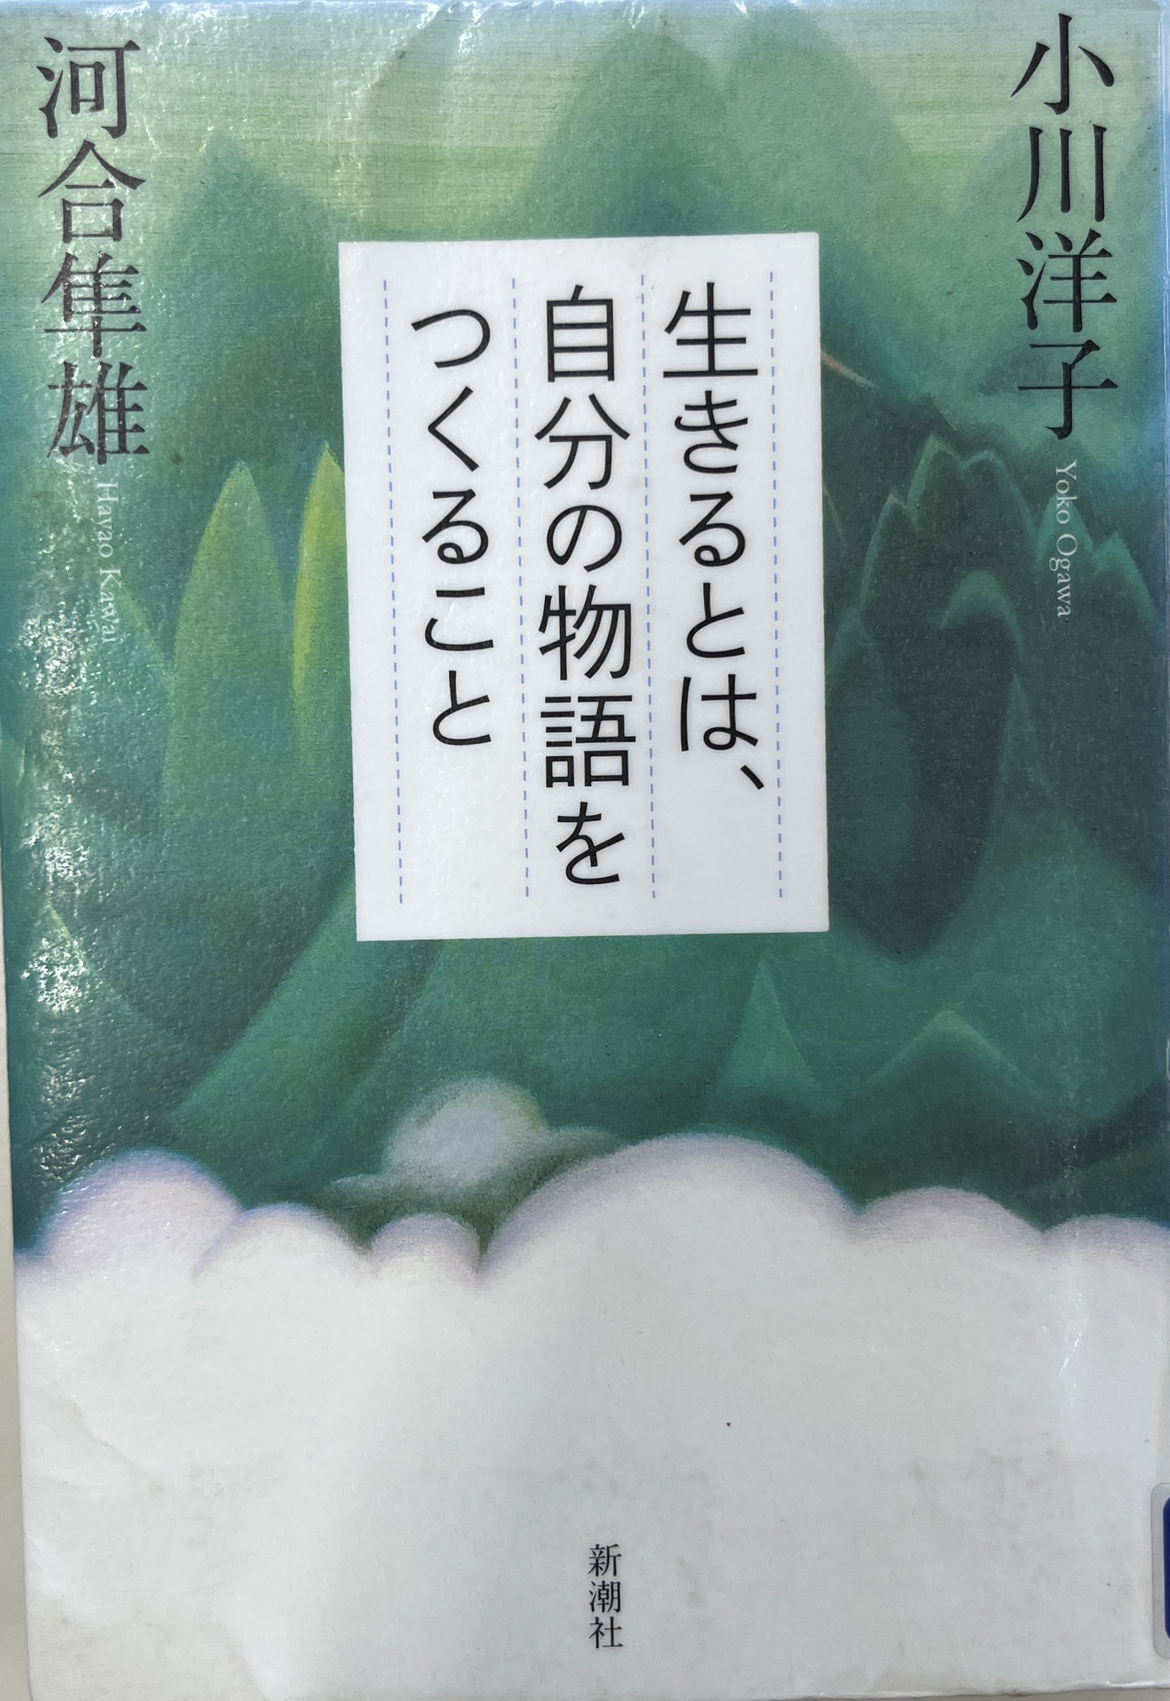 読書逍遥第110回 『生きるとは、自分の物語をつくること』河合隼雄・小川洋子著